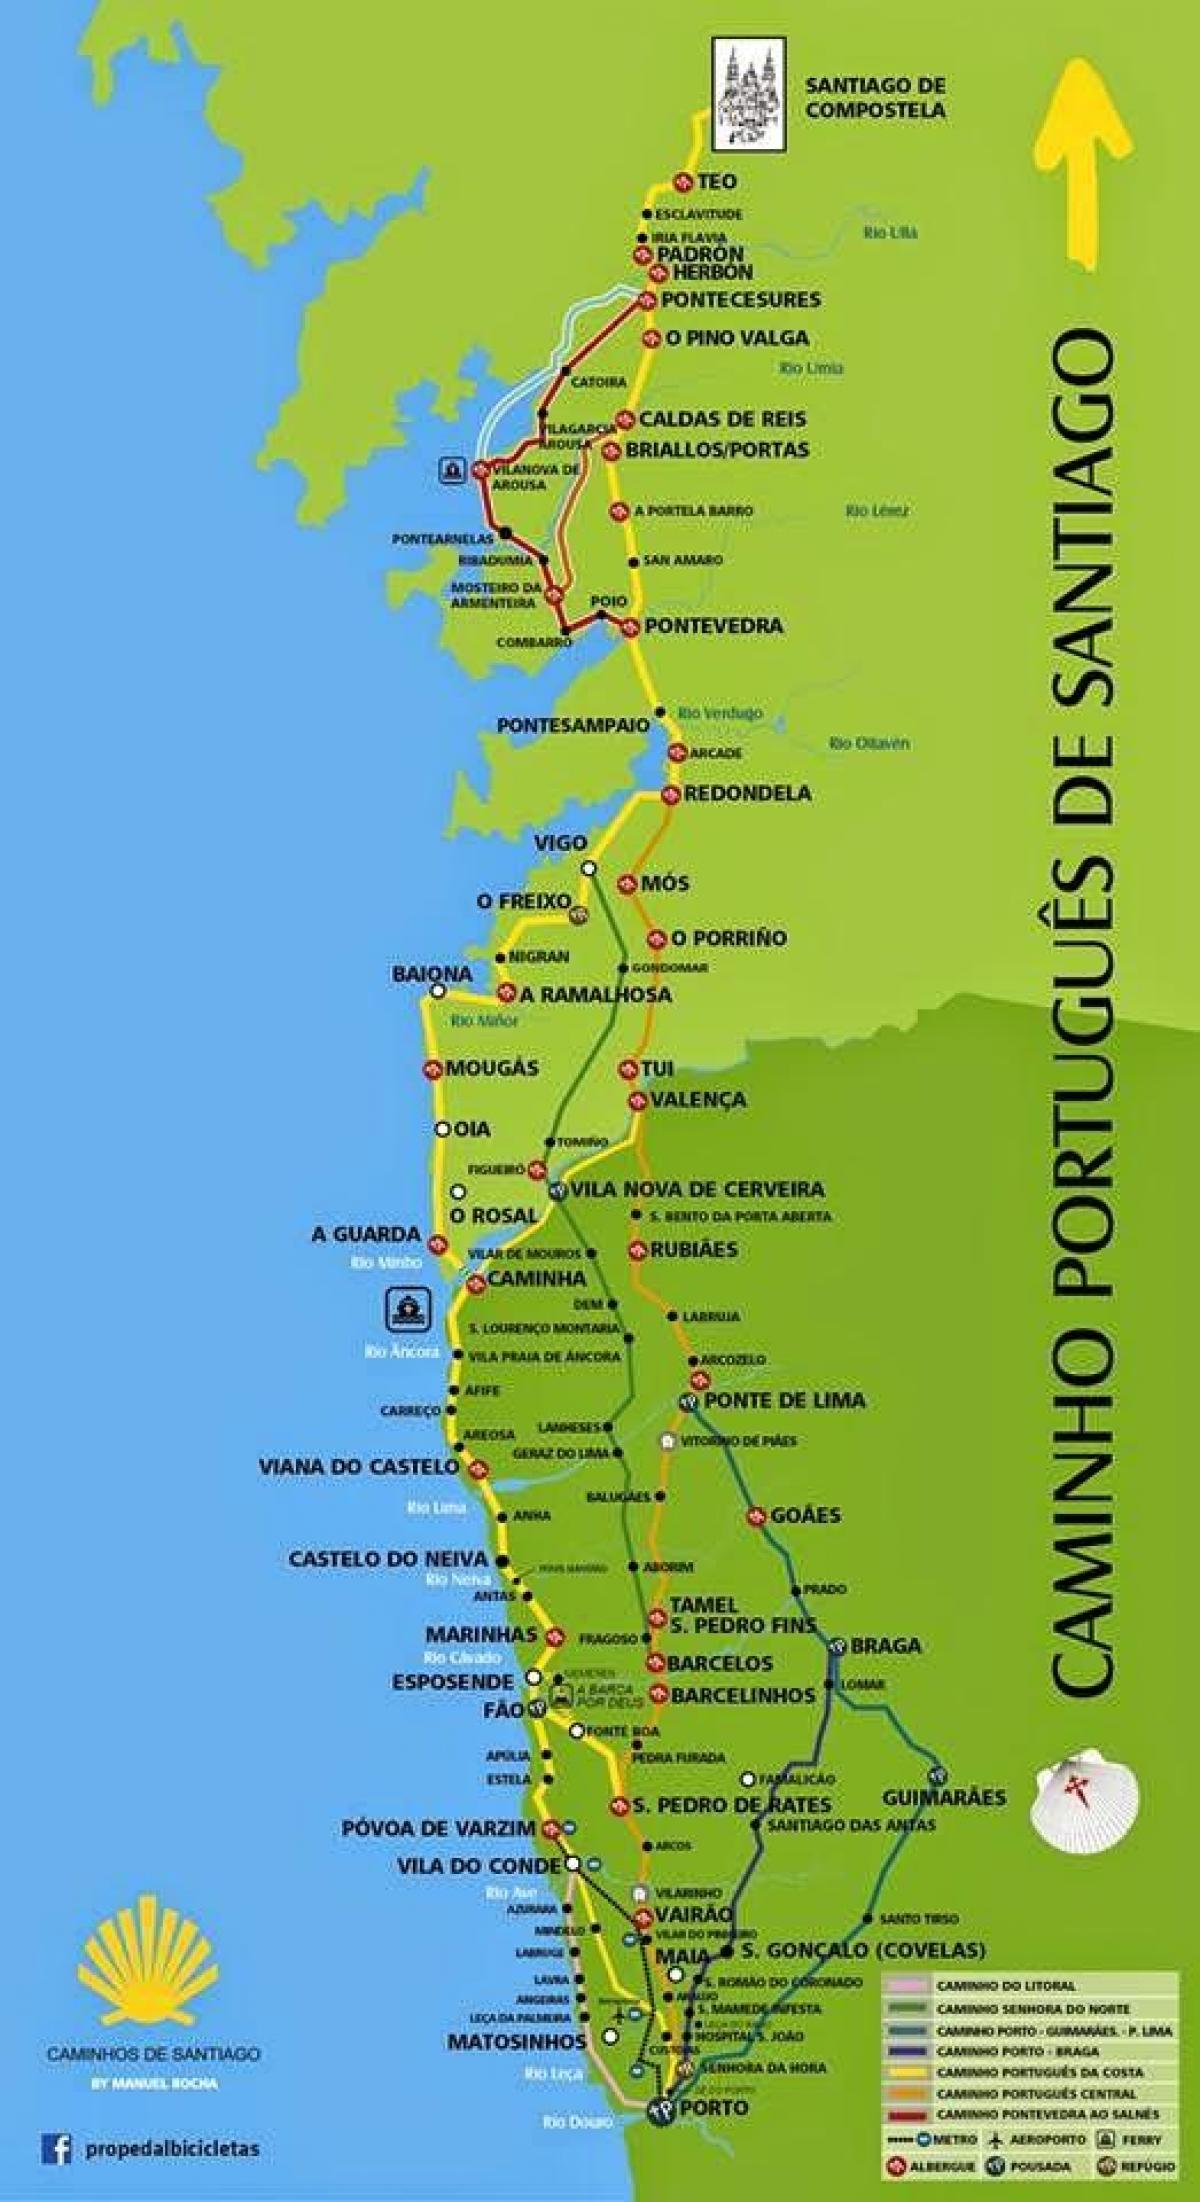 Portuguese camino coastal route map